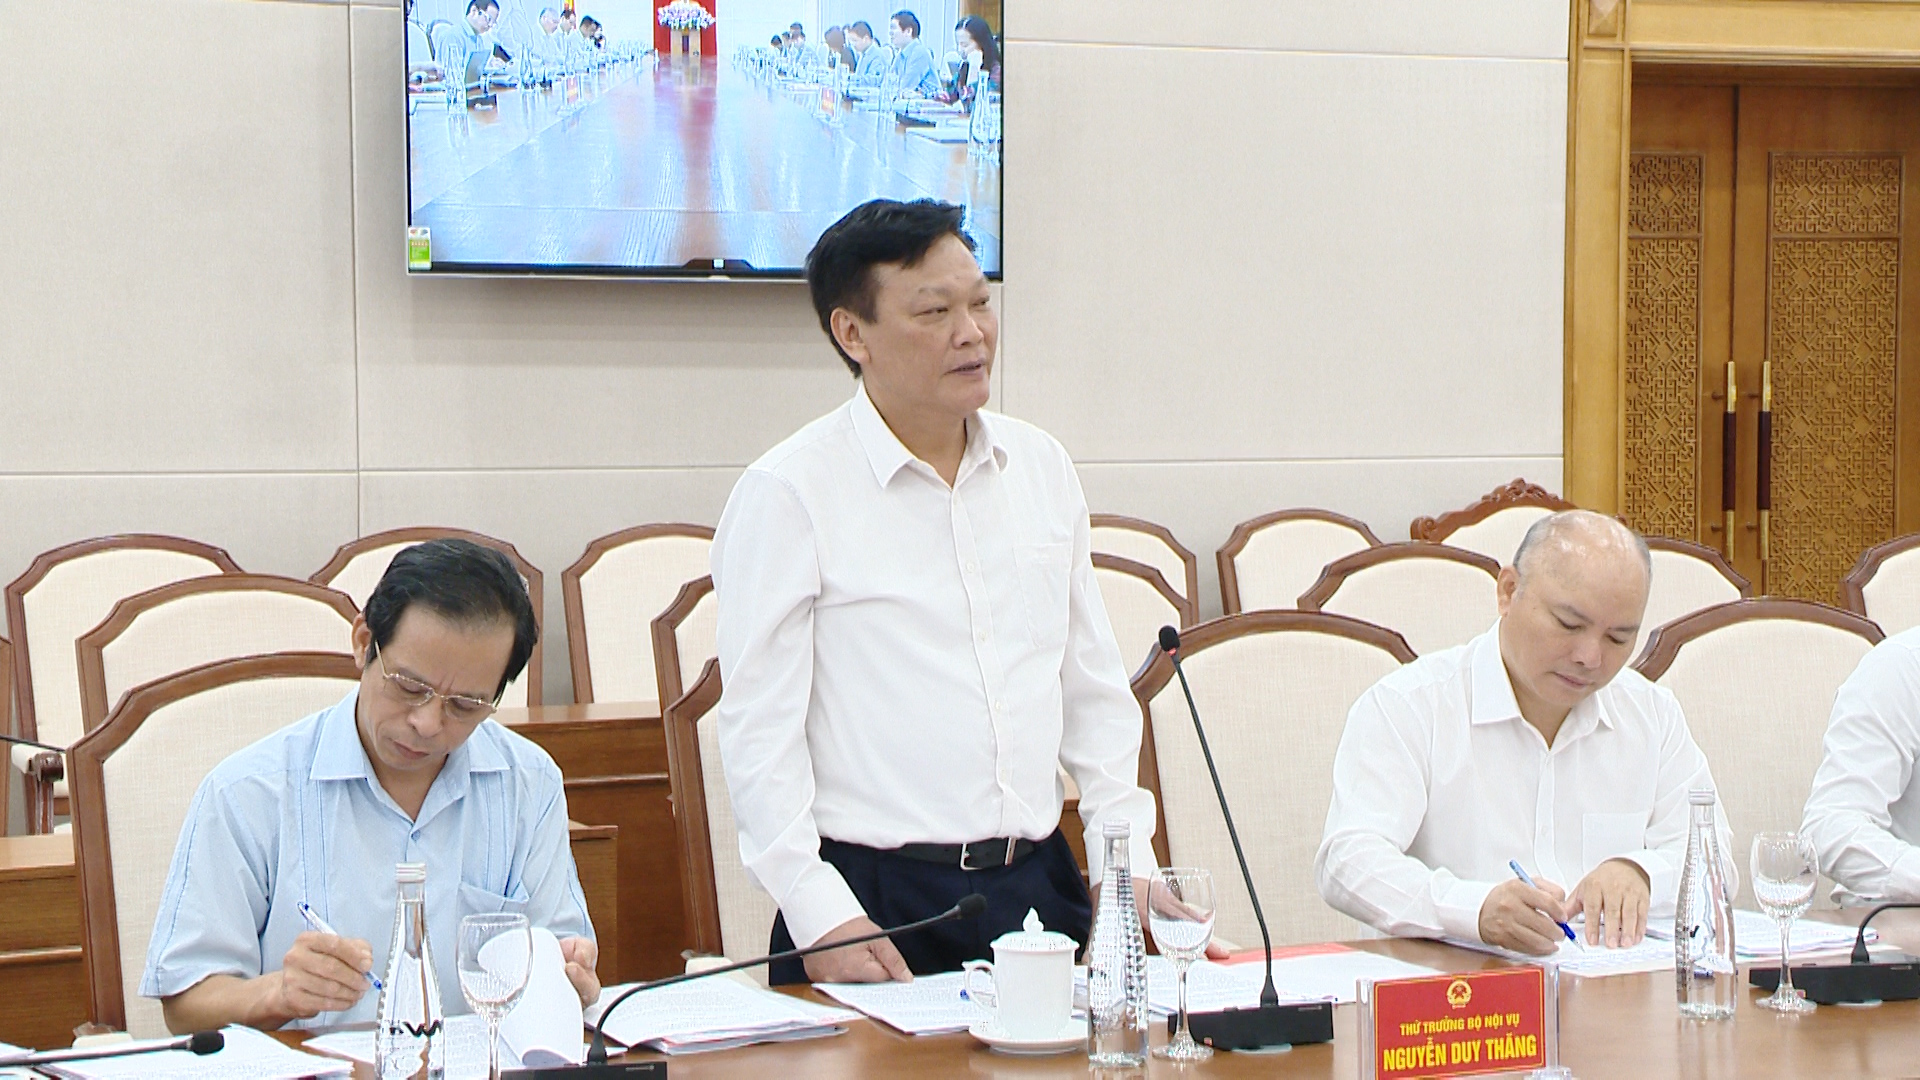 Đồng chí Nguyễn Duy Thăng, Thứ trưởng Bộ Nội vụ đánh giá cao những kết quả tỉnh Quảng Ninh đã đạt được trong công tác sắp xếp, tổ chức bộ máy